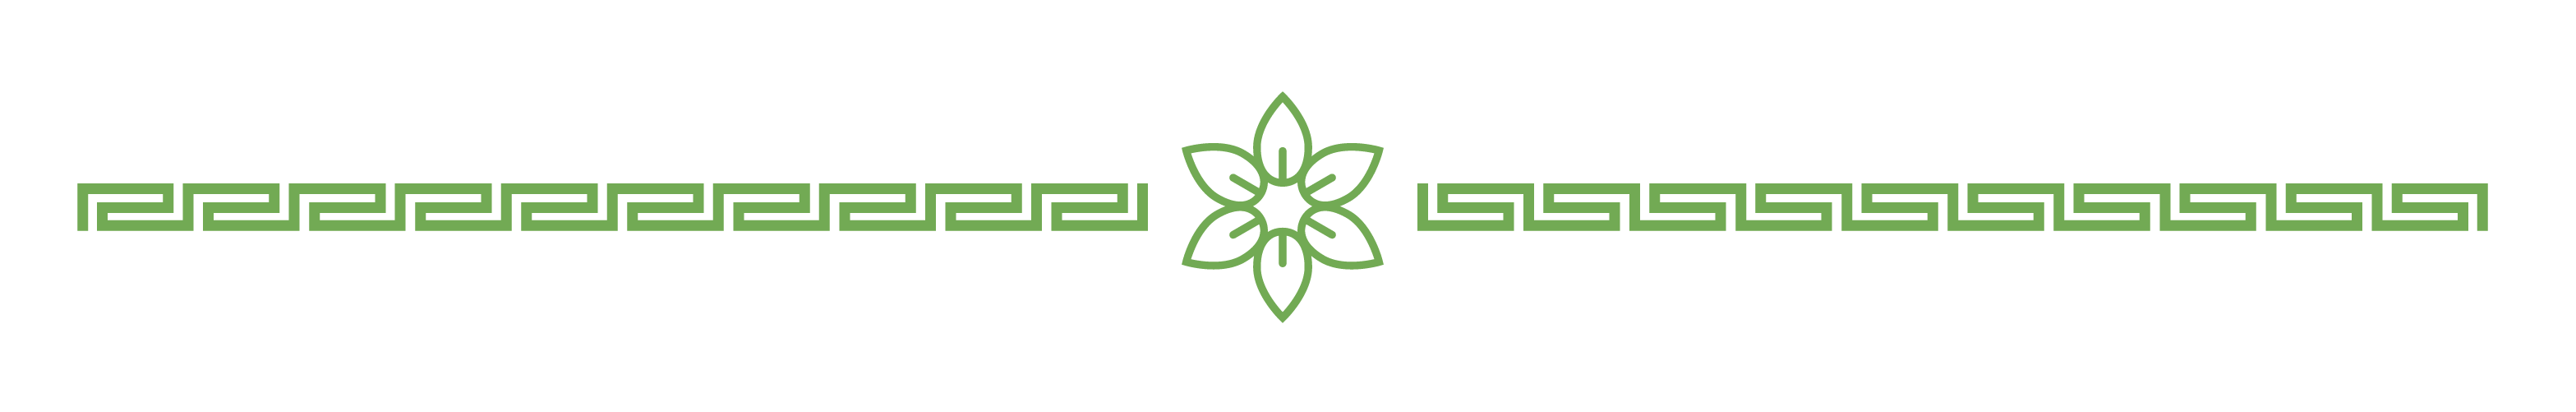 Small flower logo for divider 